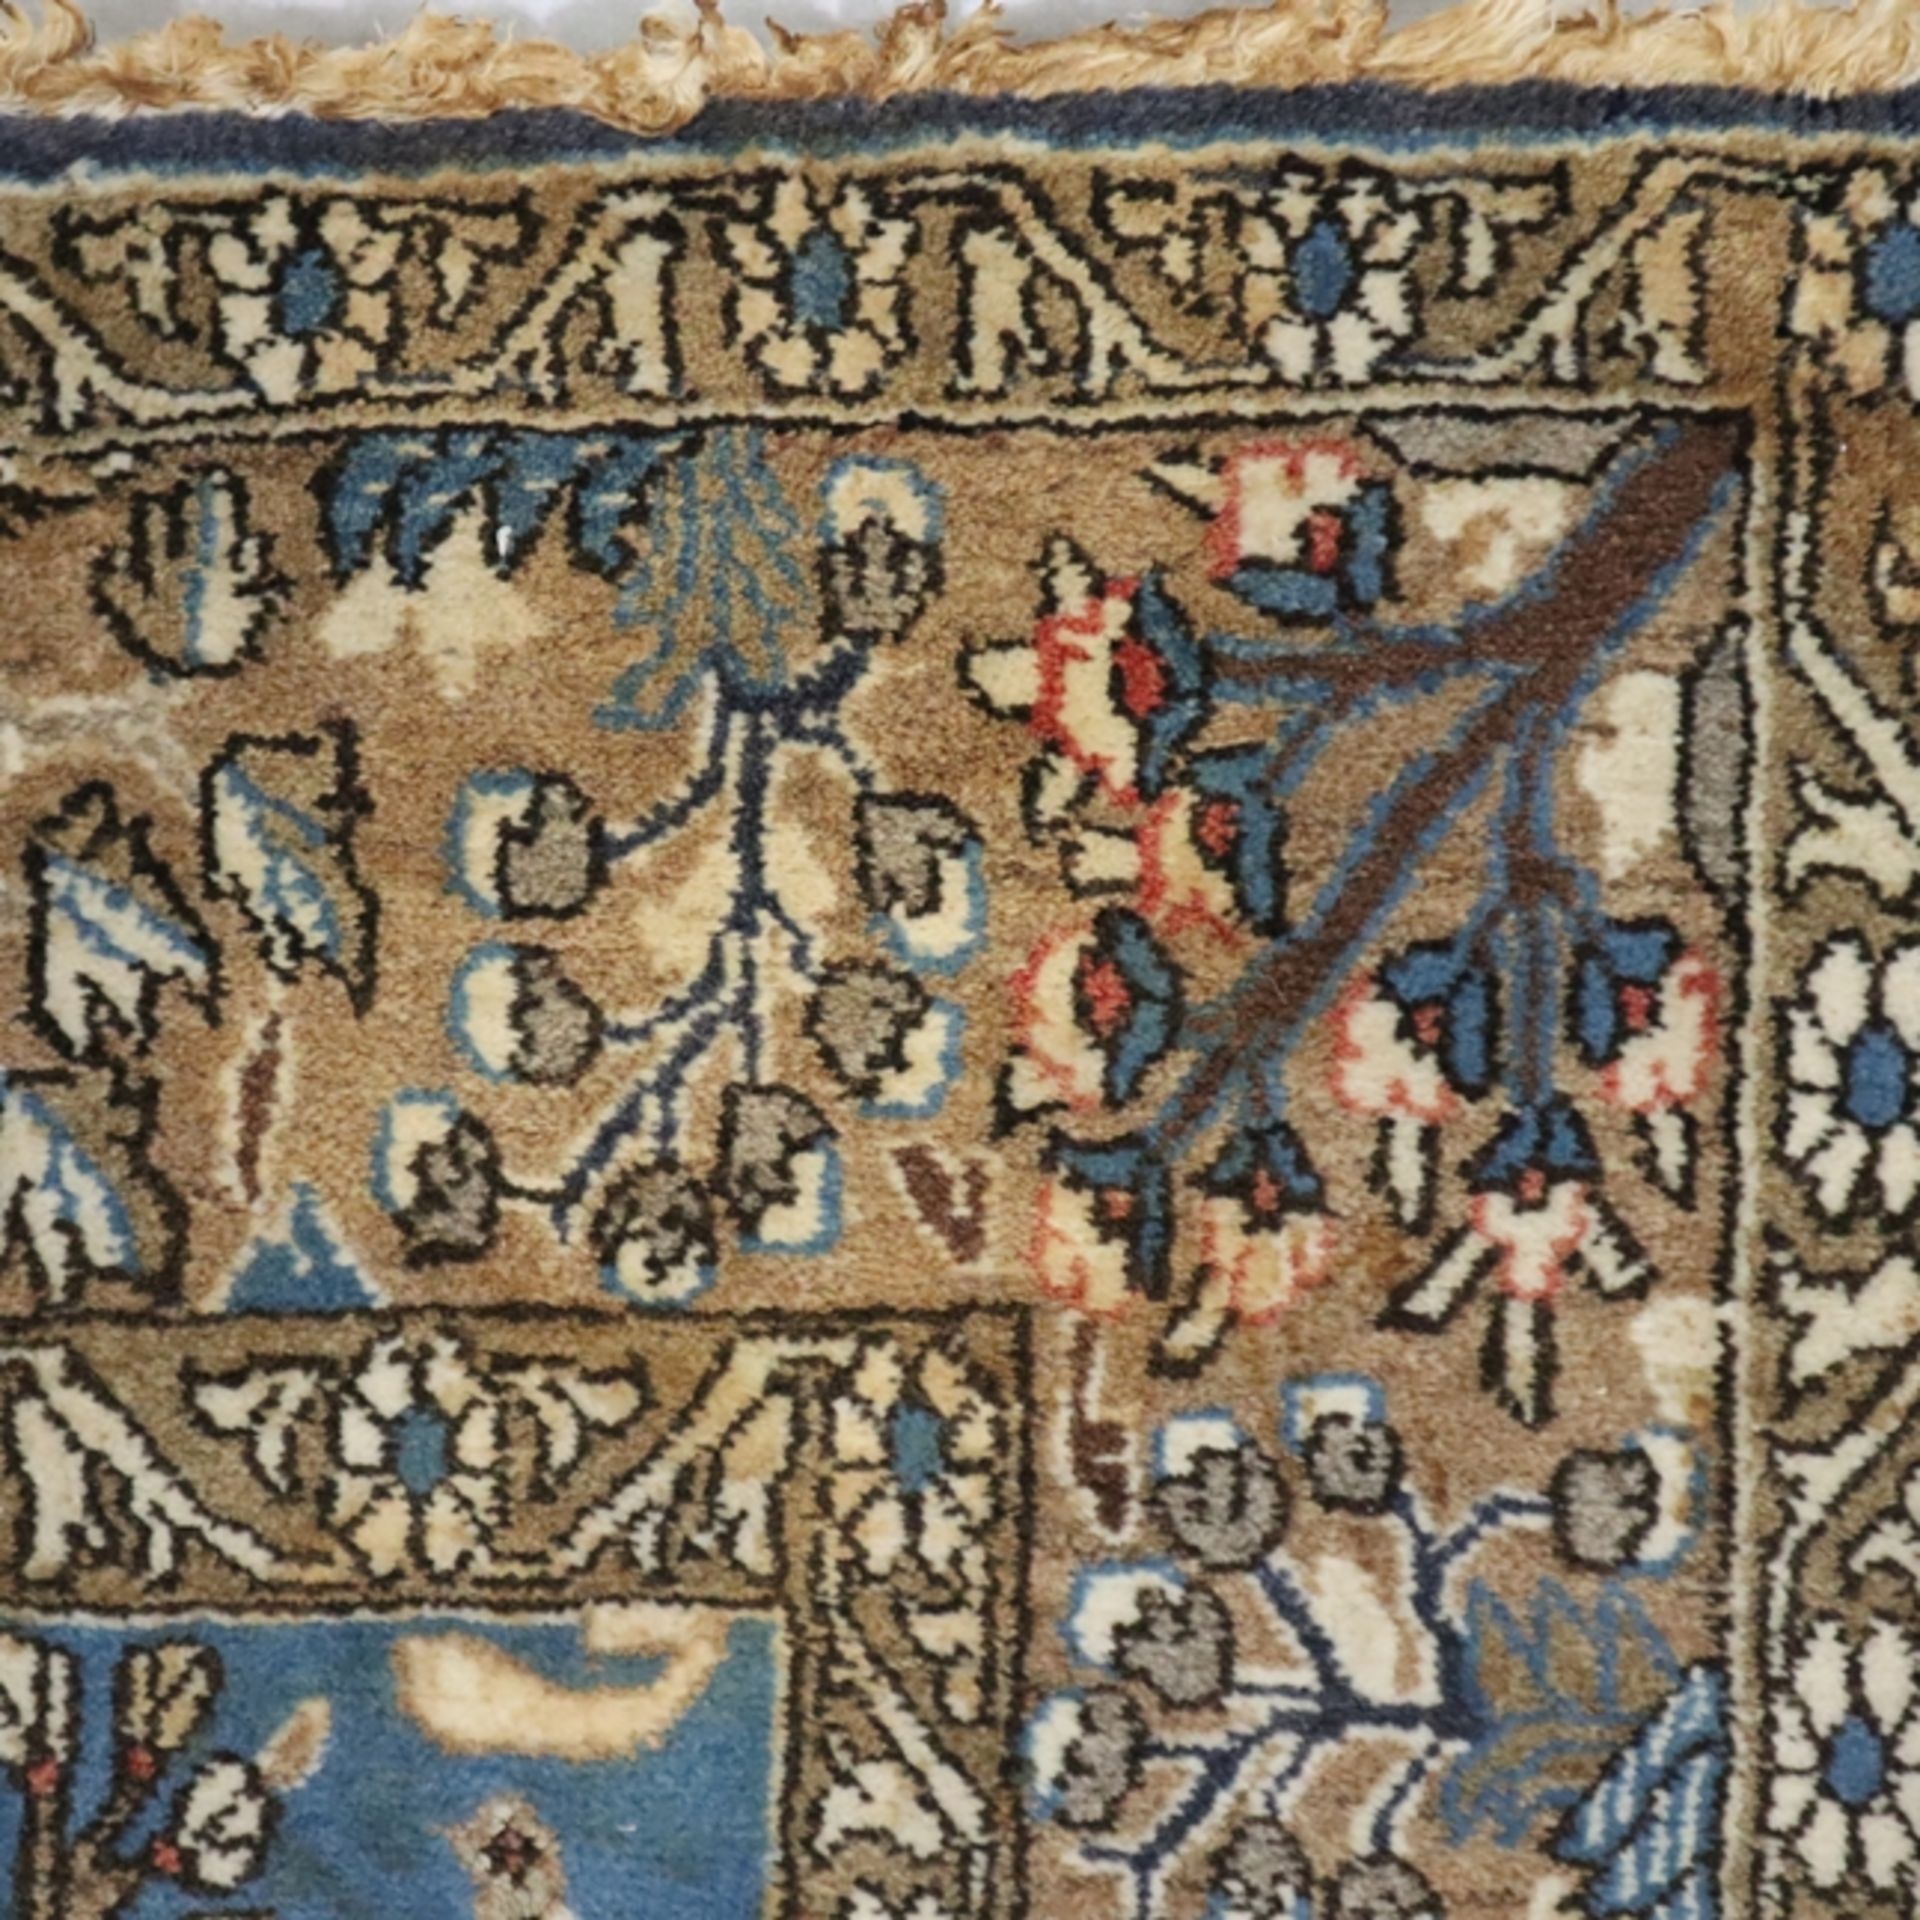 Bildteppich - 20. Jh., Wolle, signiert, Darstellung wilder Tiere und Pflanzen, zentrales Medaillon  - Bild 9 aus 10